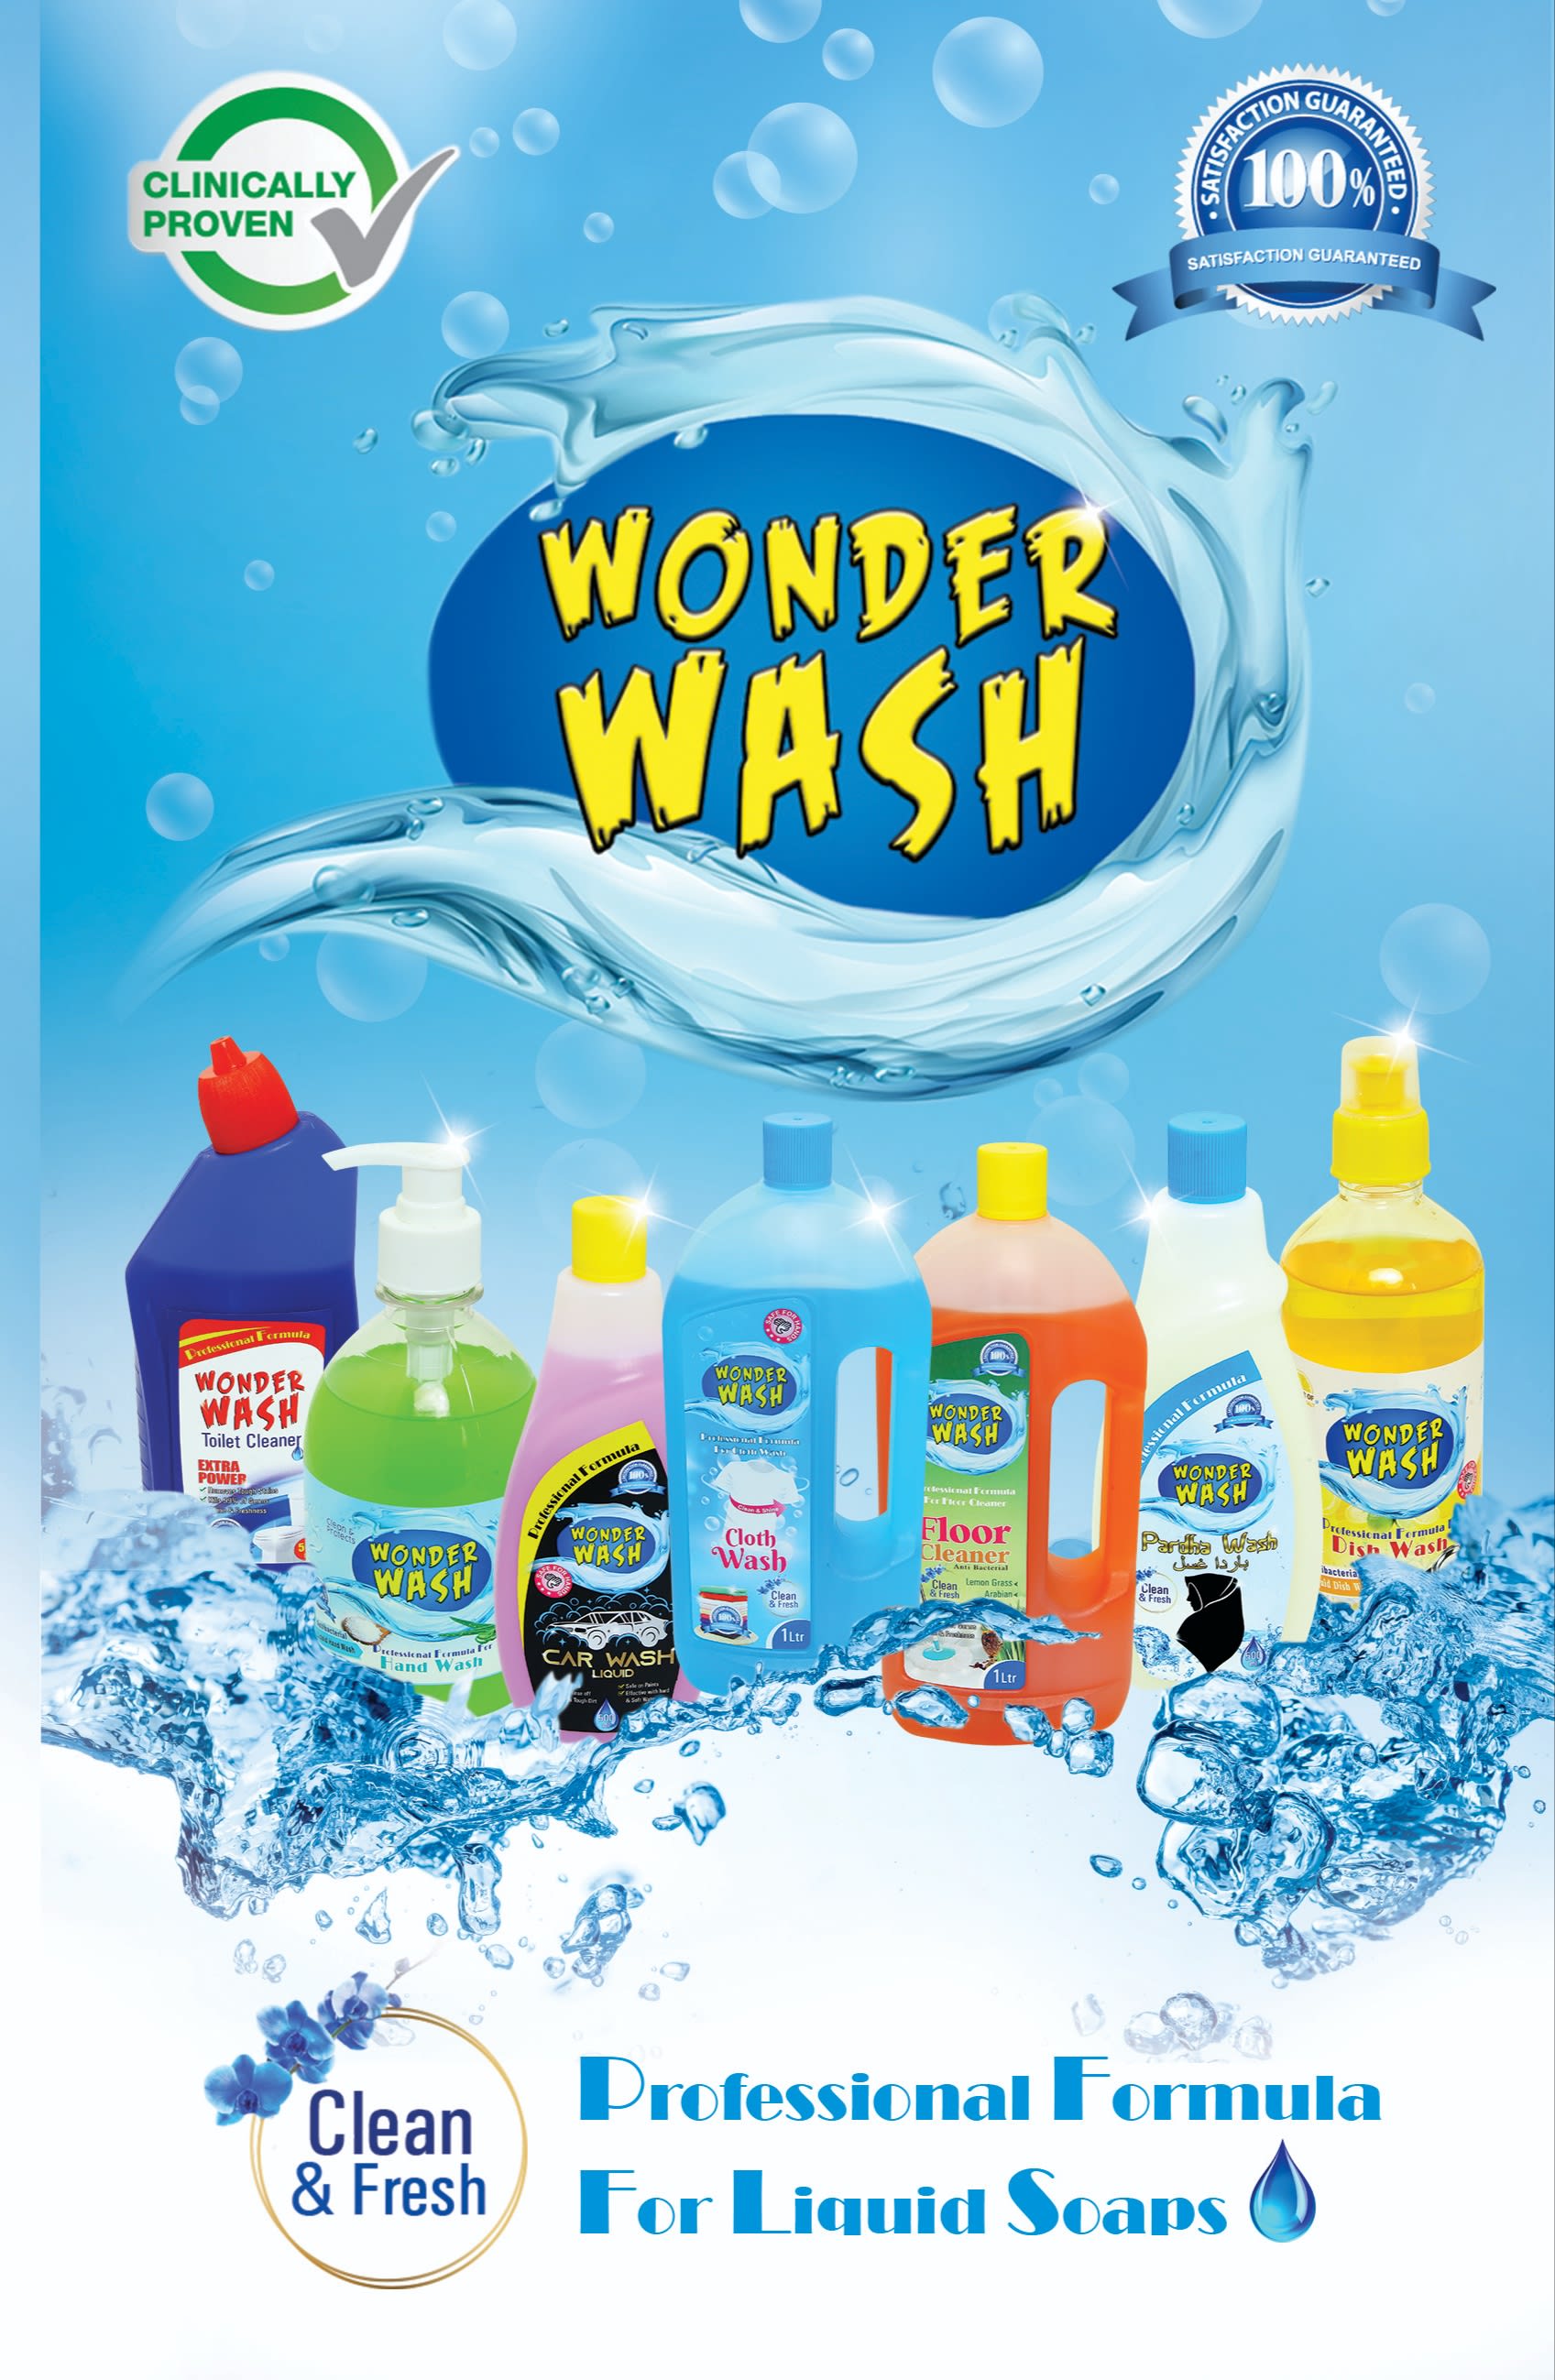 Wonder wash